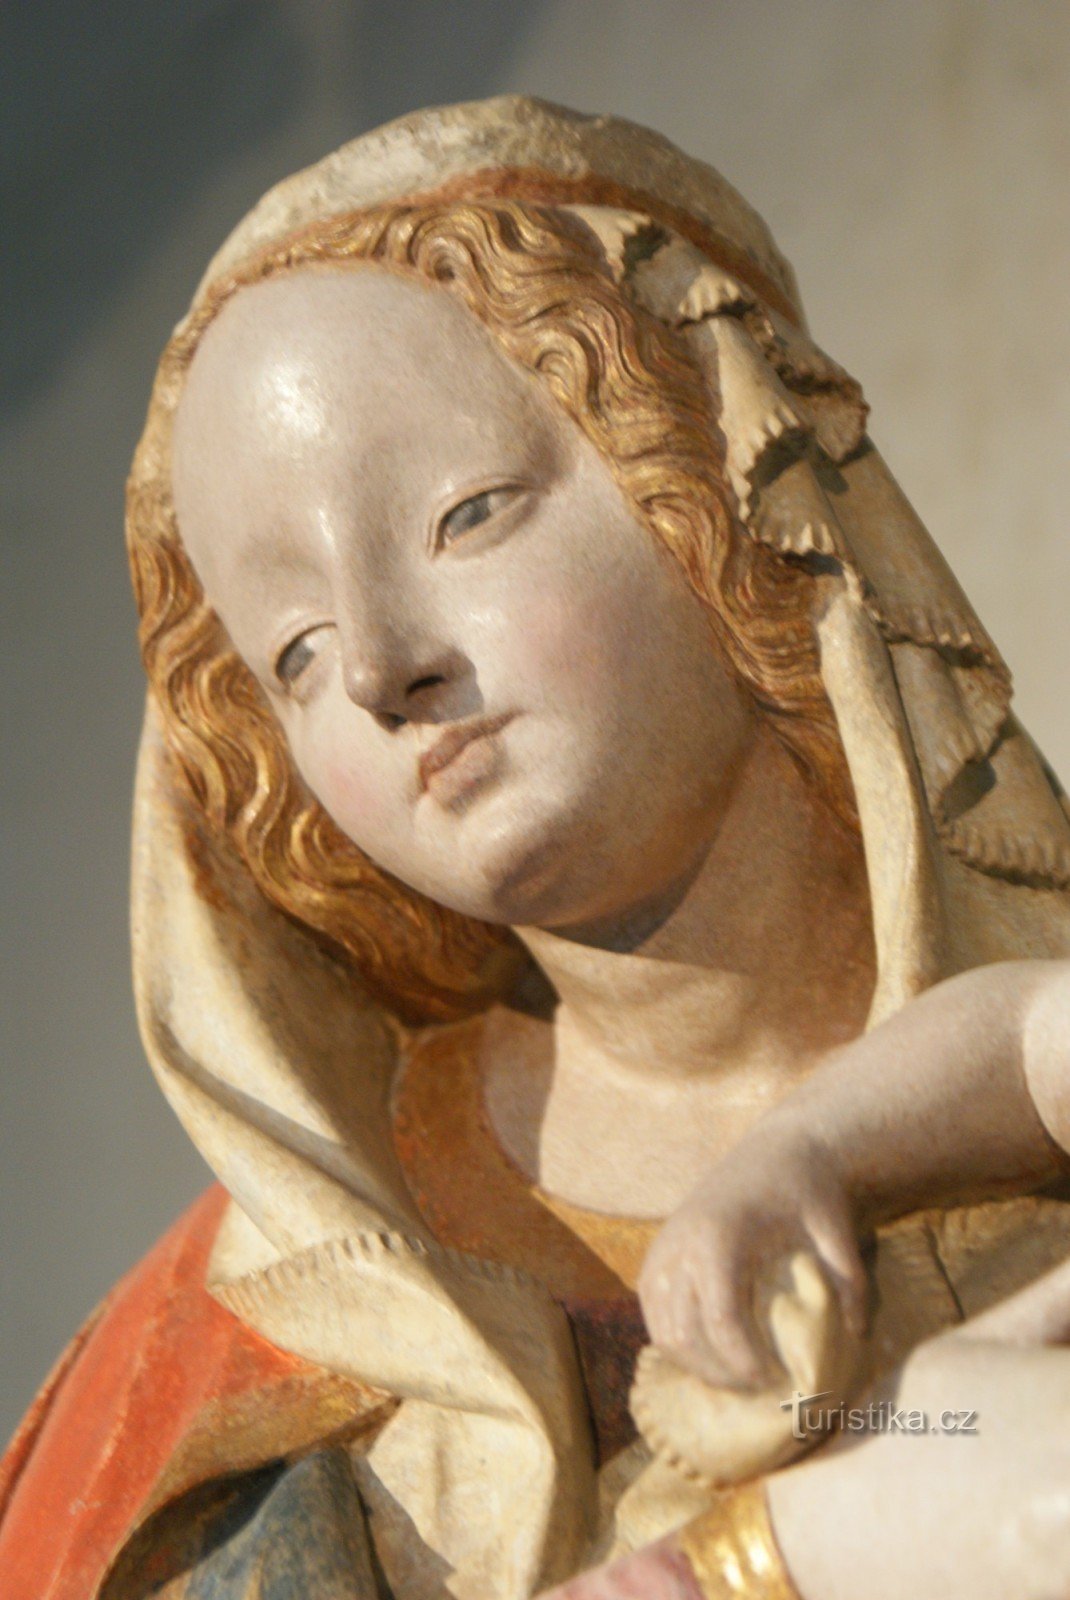 Olomouc - Šternberská Madonna, la joya de la exposición del Museo de la Archidiócesis